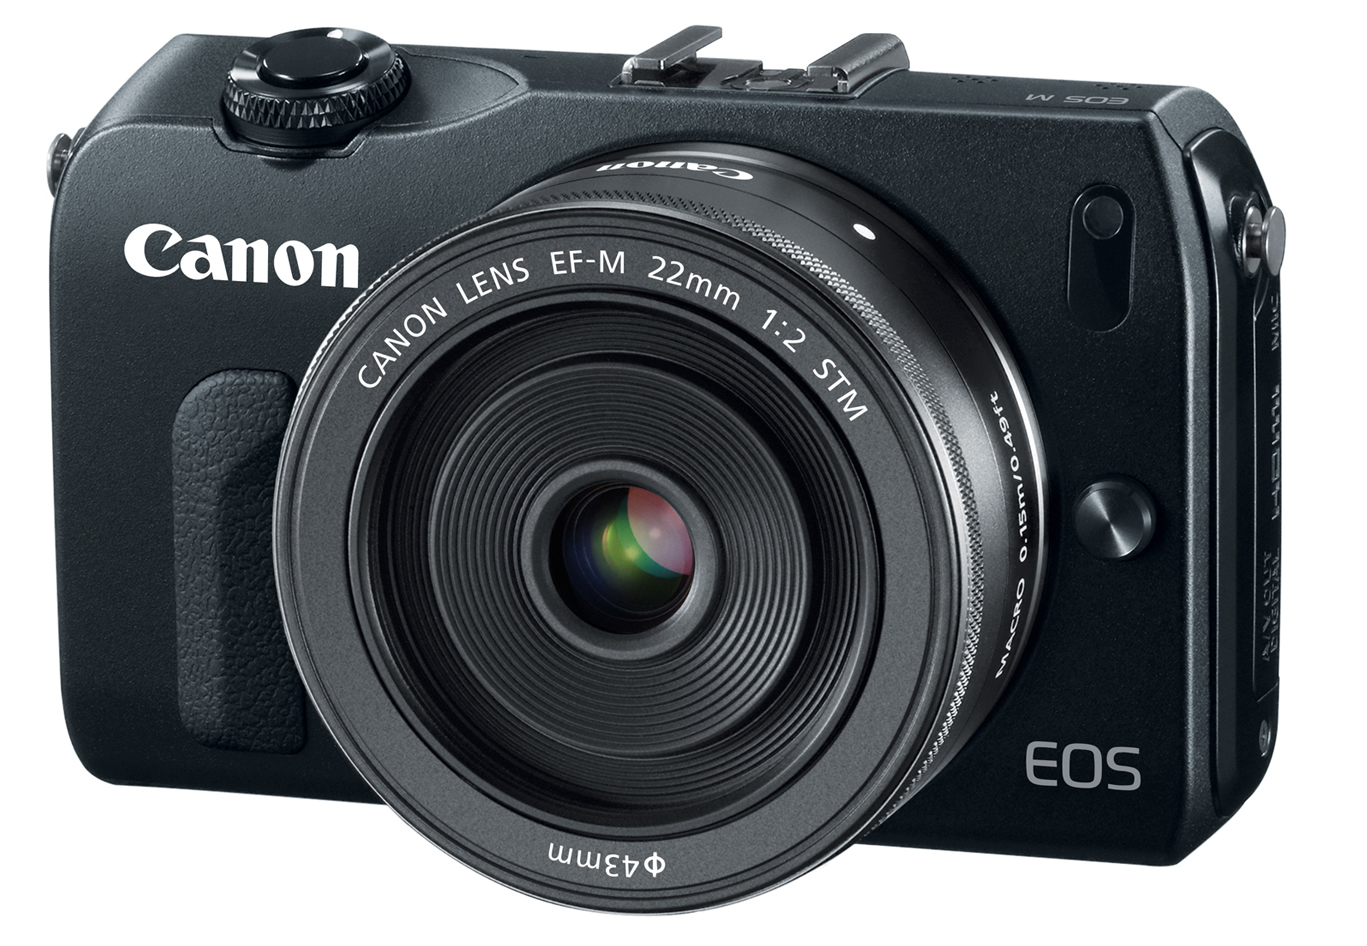 Máy ảnh giá rẻ Canon EOS M được thiết kế dễ sử dụng